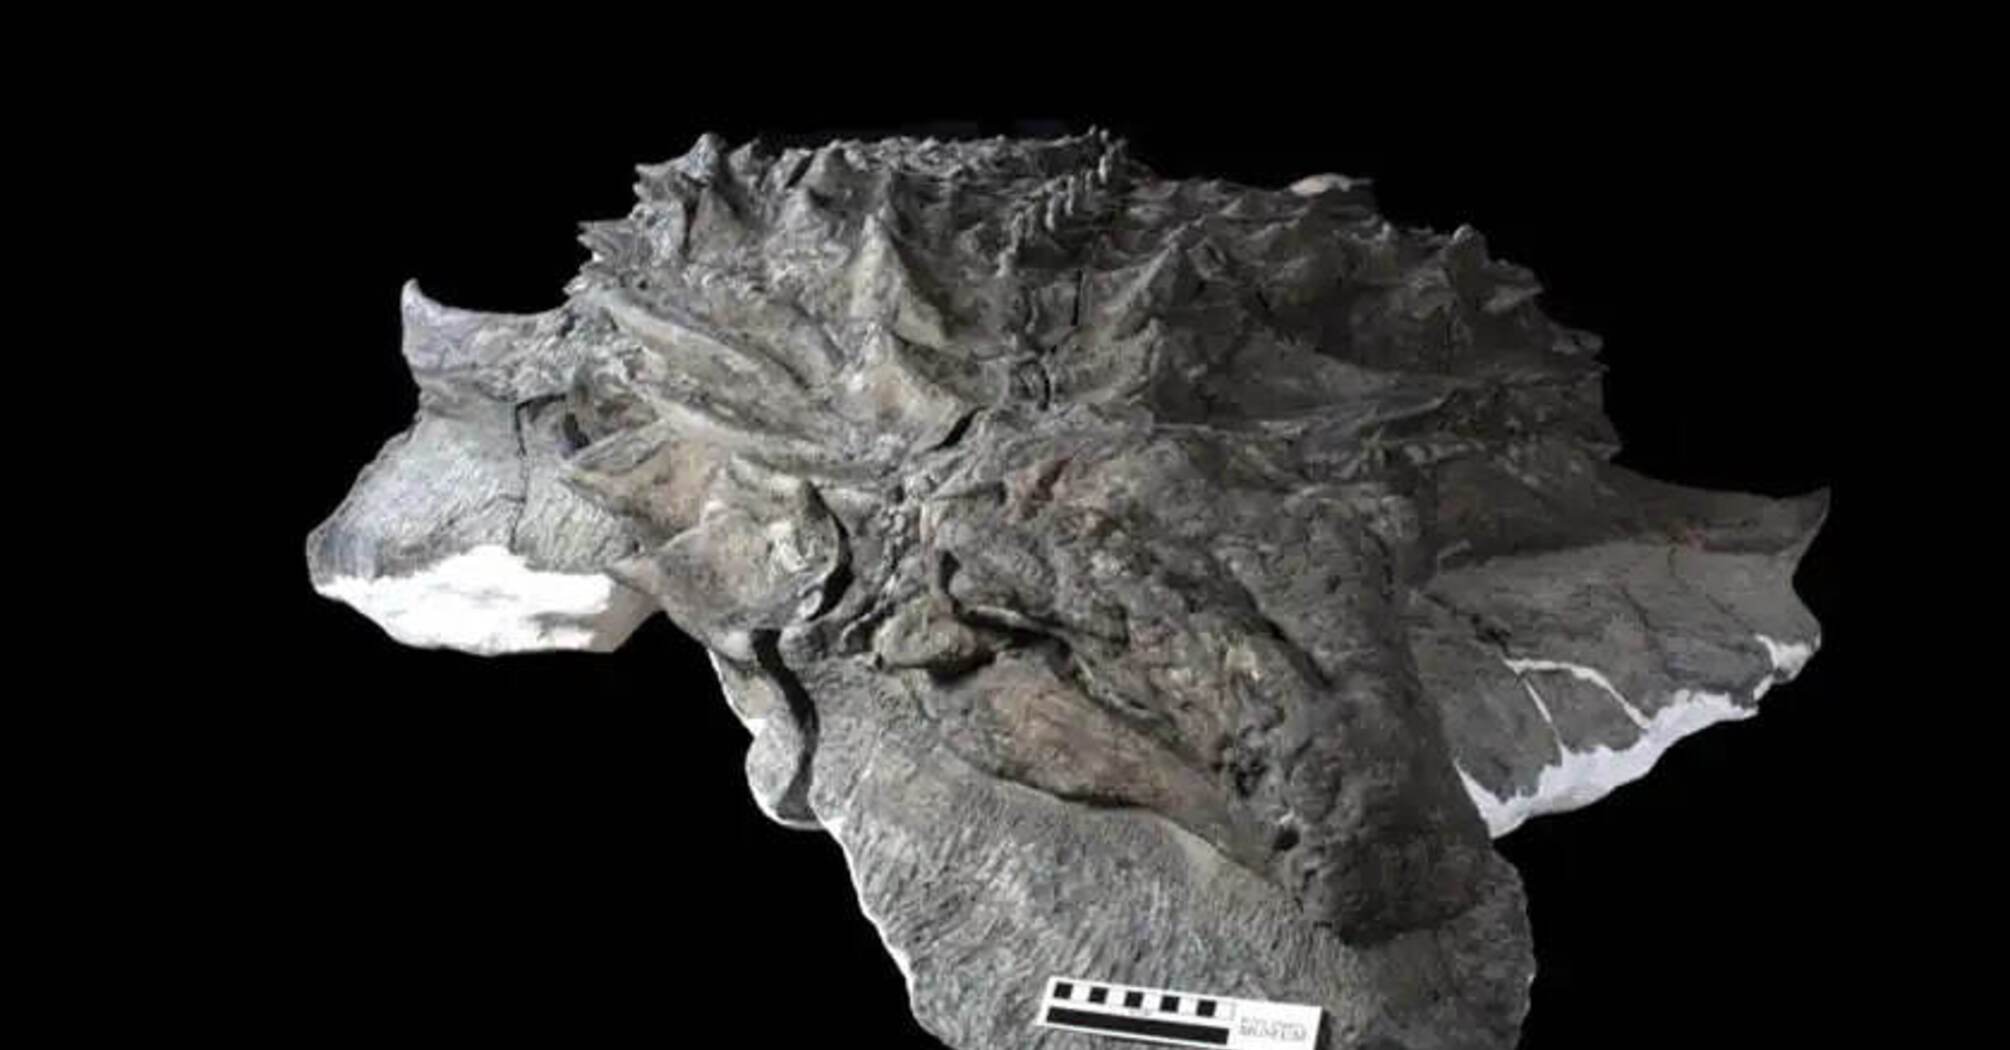 Один на миллиард: Ученые обнаружили останки целого динозавра с сохраненной кожей и лицом (фото)